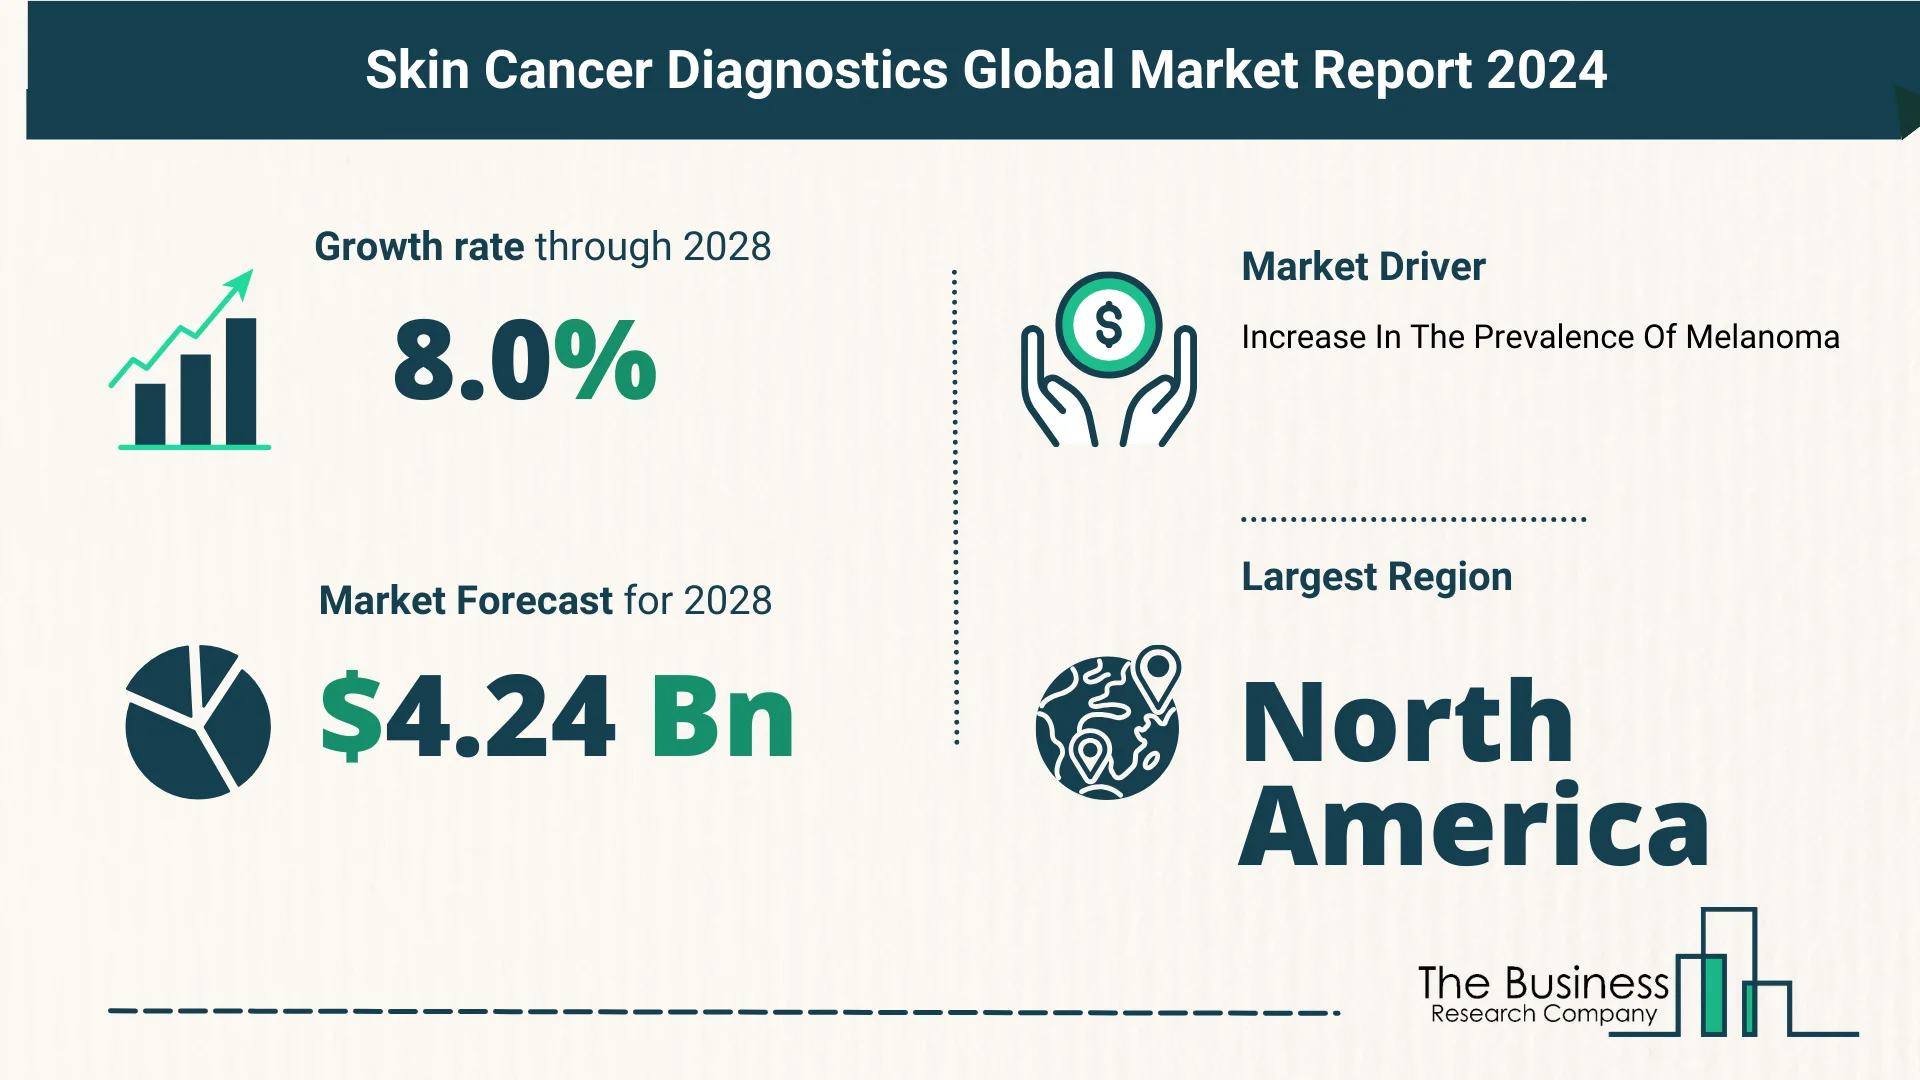 Global Skin Cancer Diagnostics Market